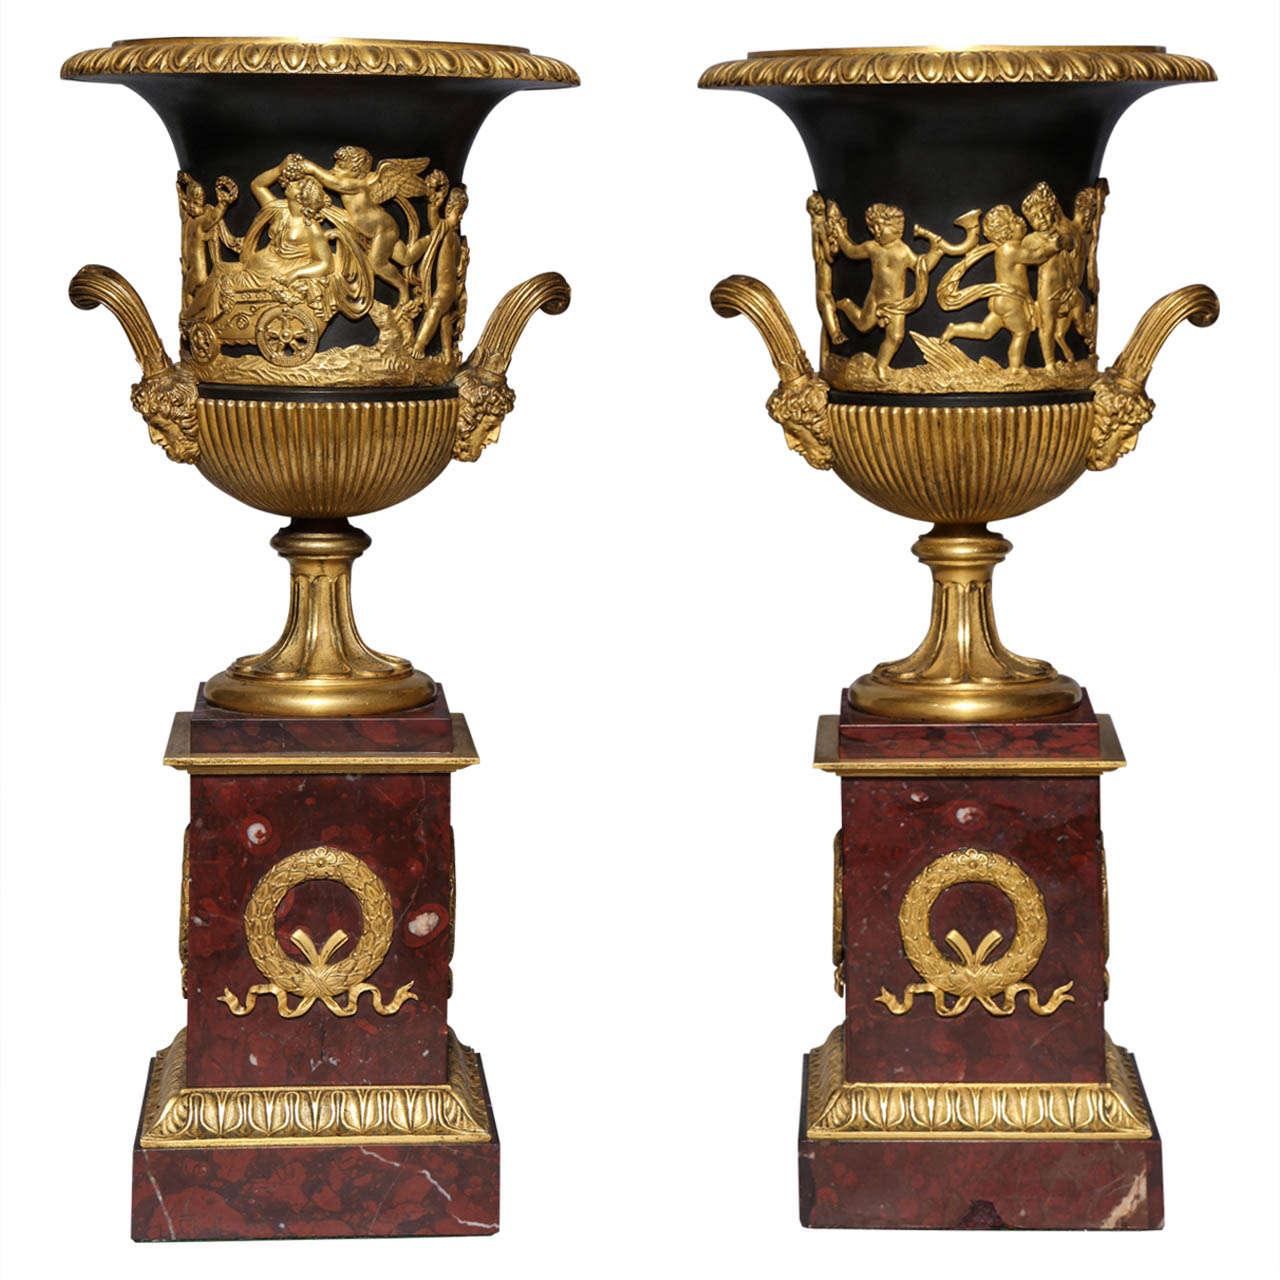 Paar neoklassizistische französische Vasen aus Doré-Bronze, patinierter Bronze und rotem Marmor